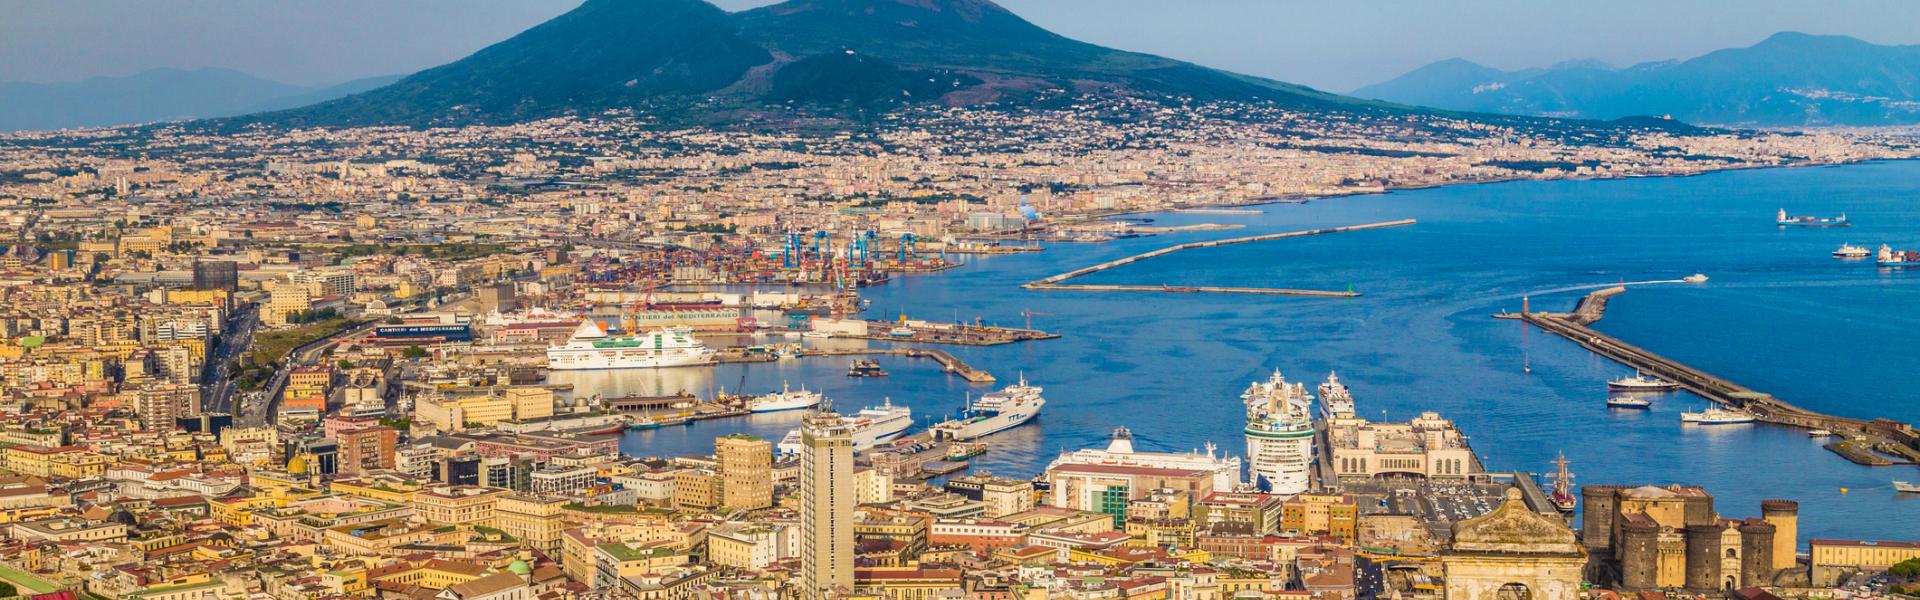 Case Vacanze e Appartamenti in Provincia di Napoli in affitto - CaseVacanza.it